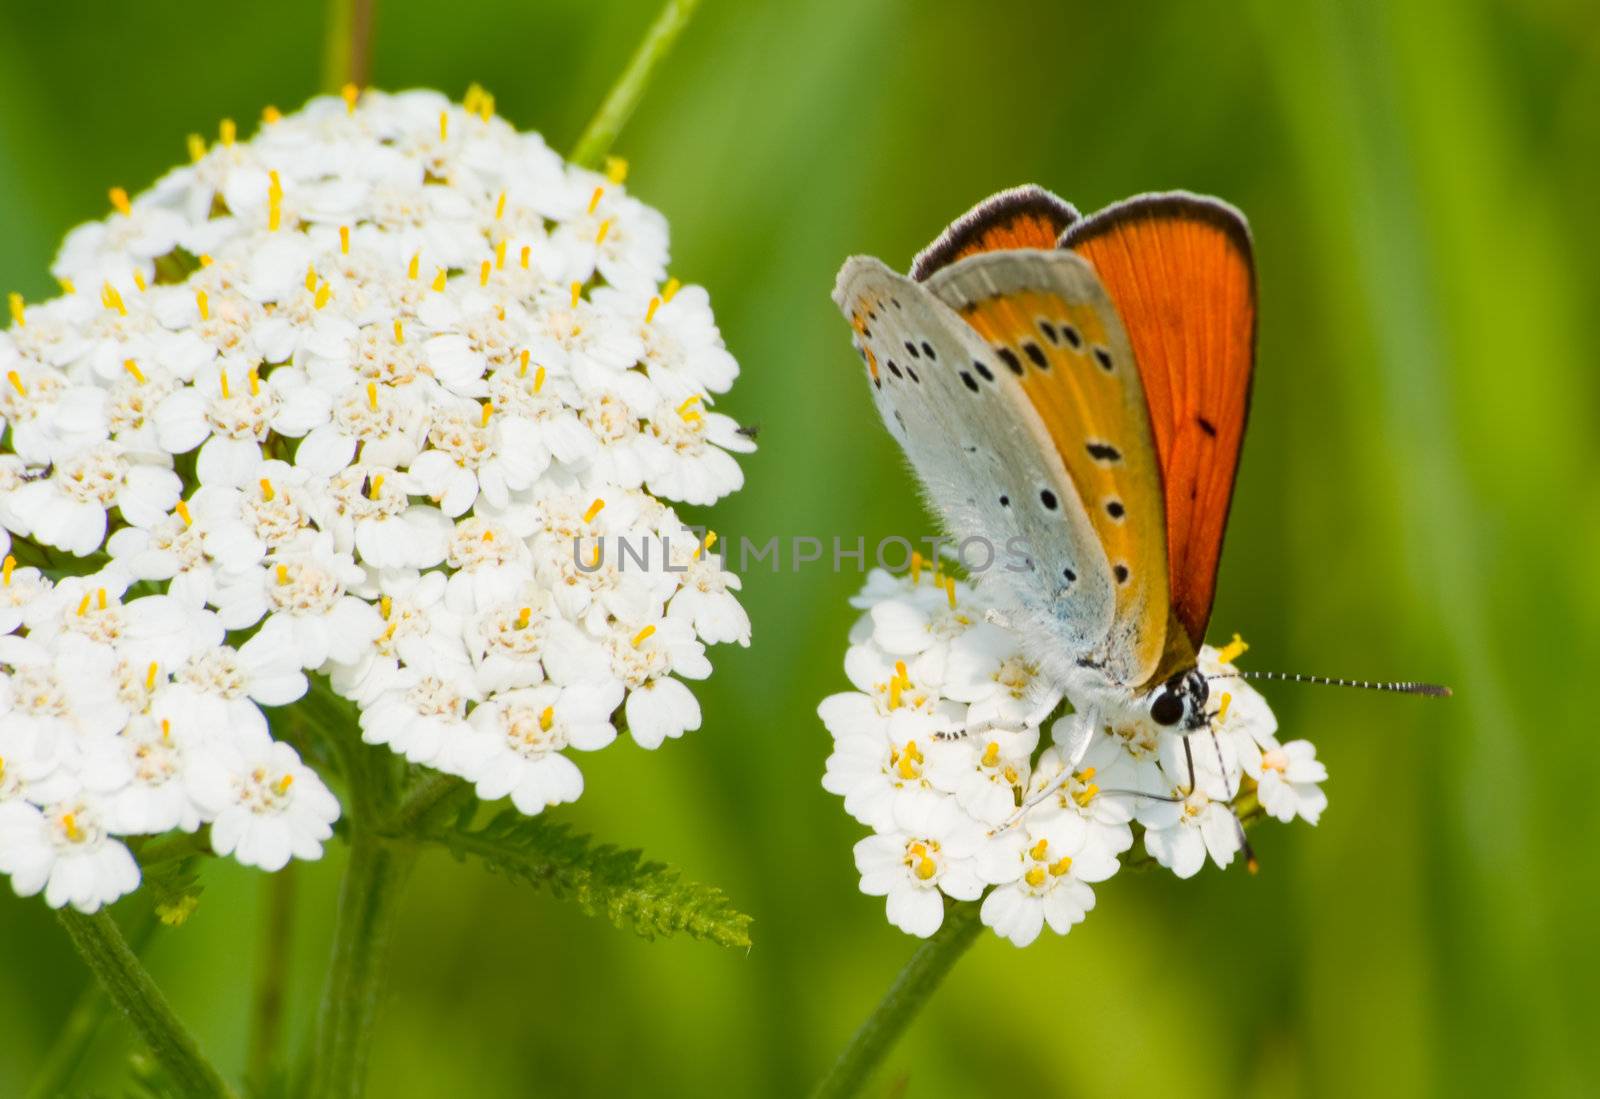 Butterfly Lycaena dispar rutila breakfast on a flower